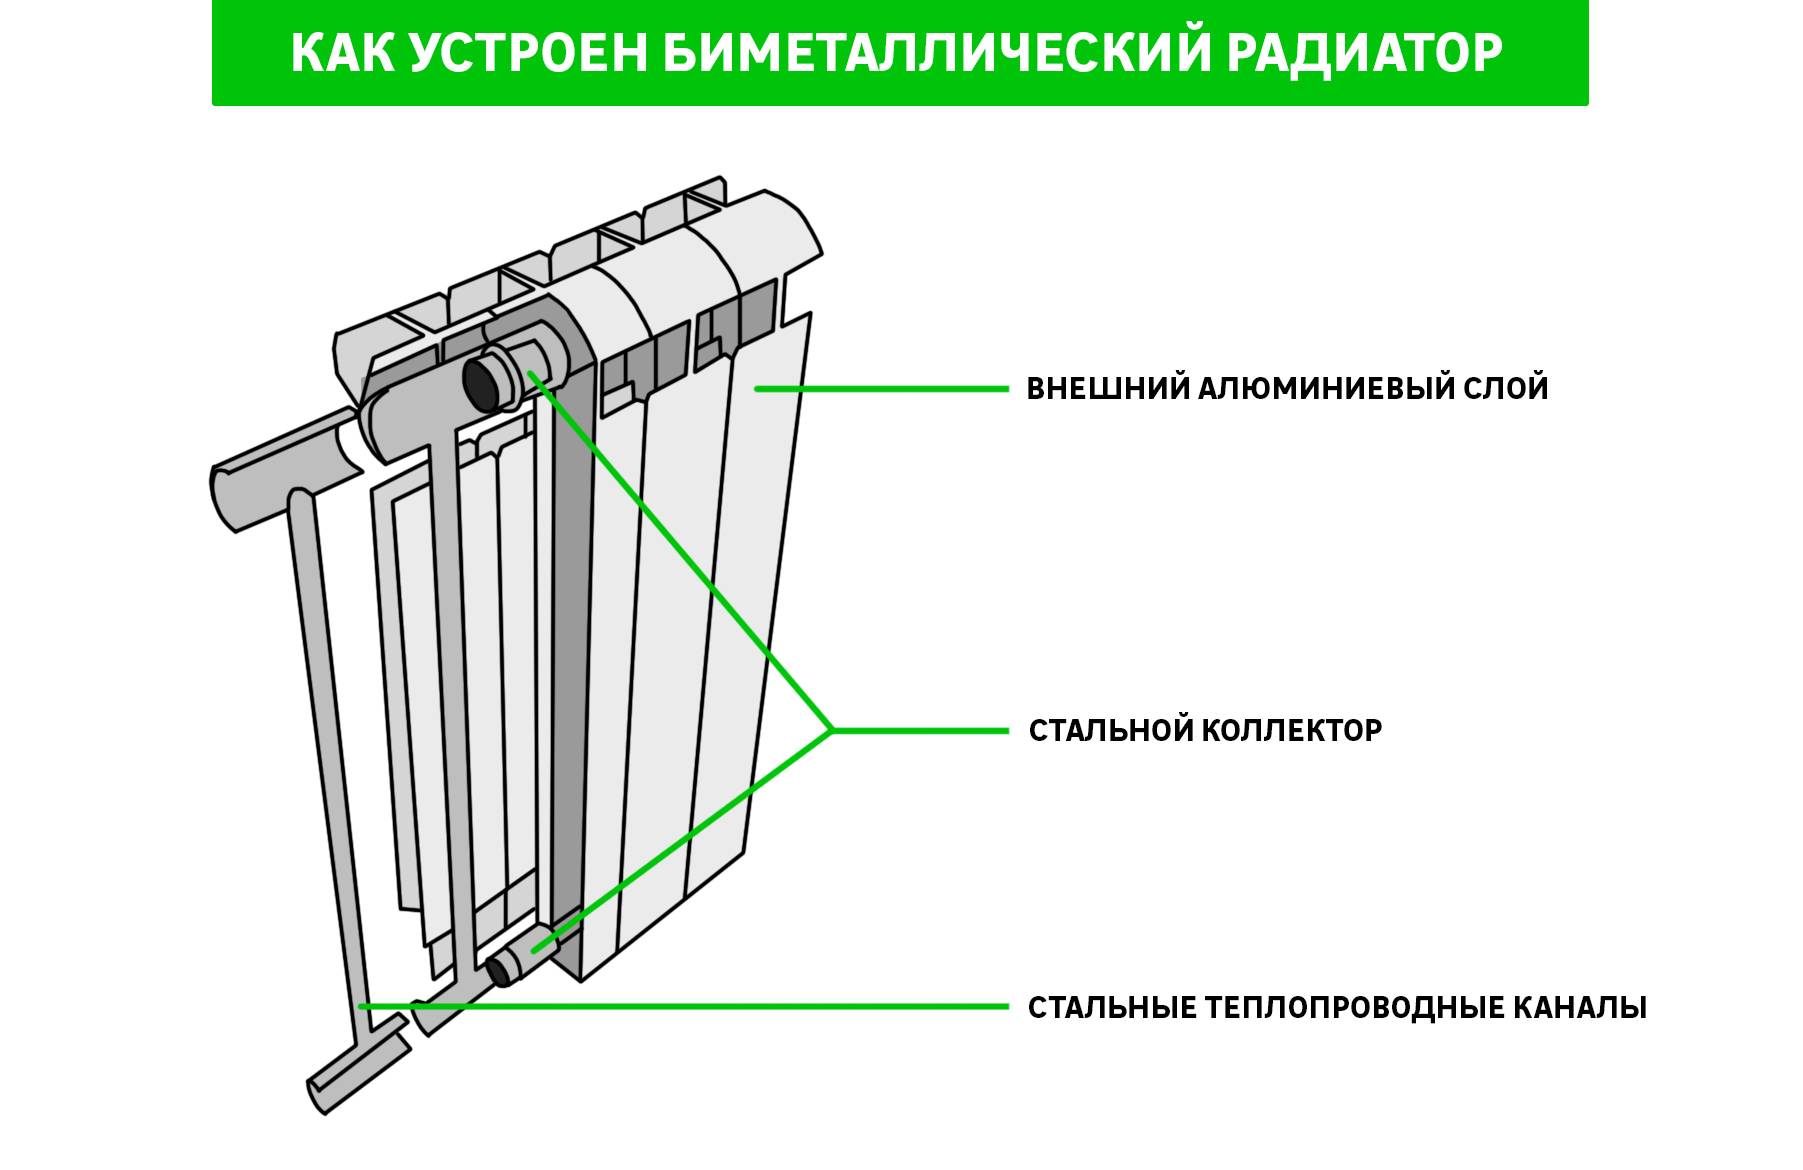 ✅ вакуумные радиаторы отопления - принцип работы и характеристики - dnp-zem.ru